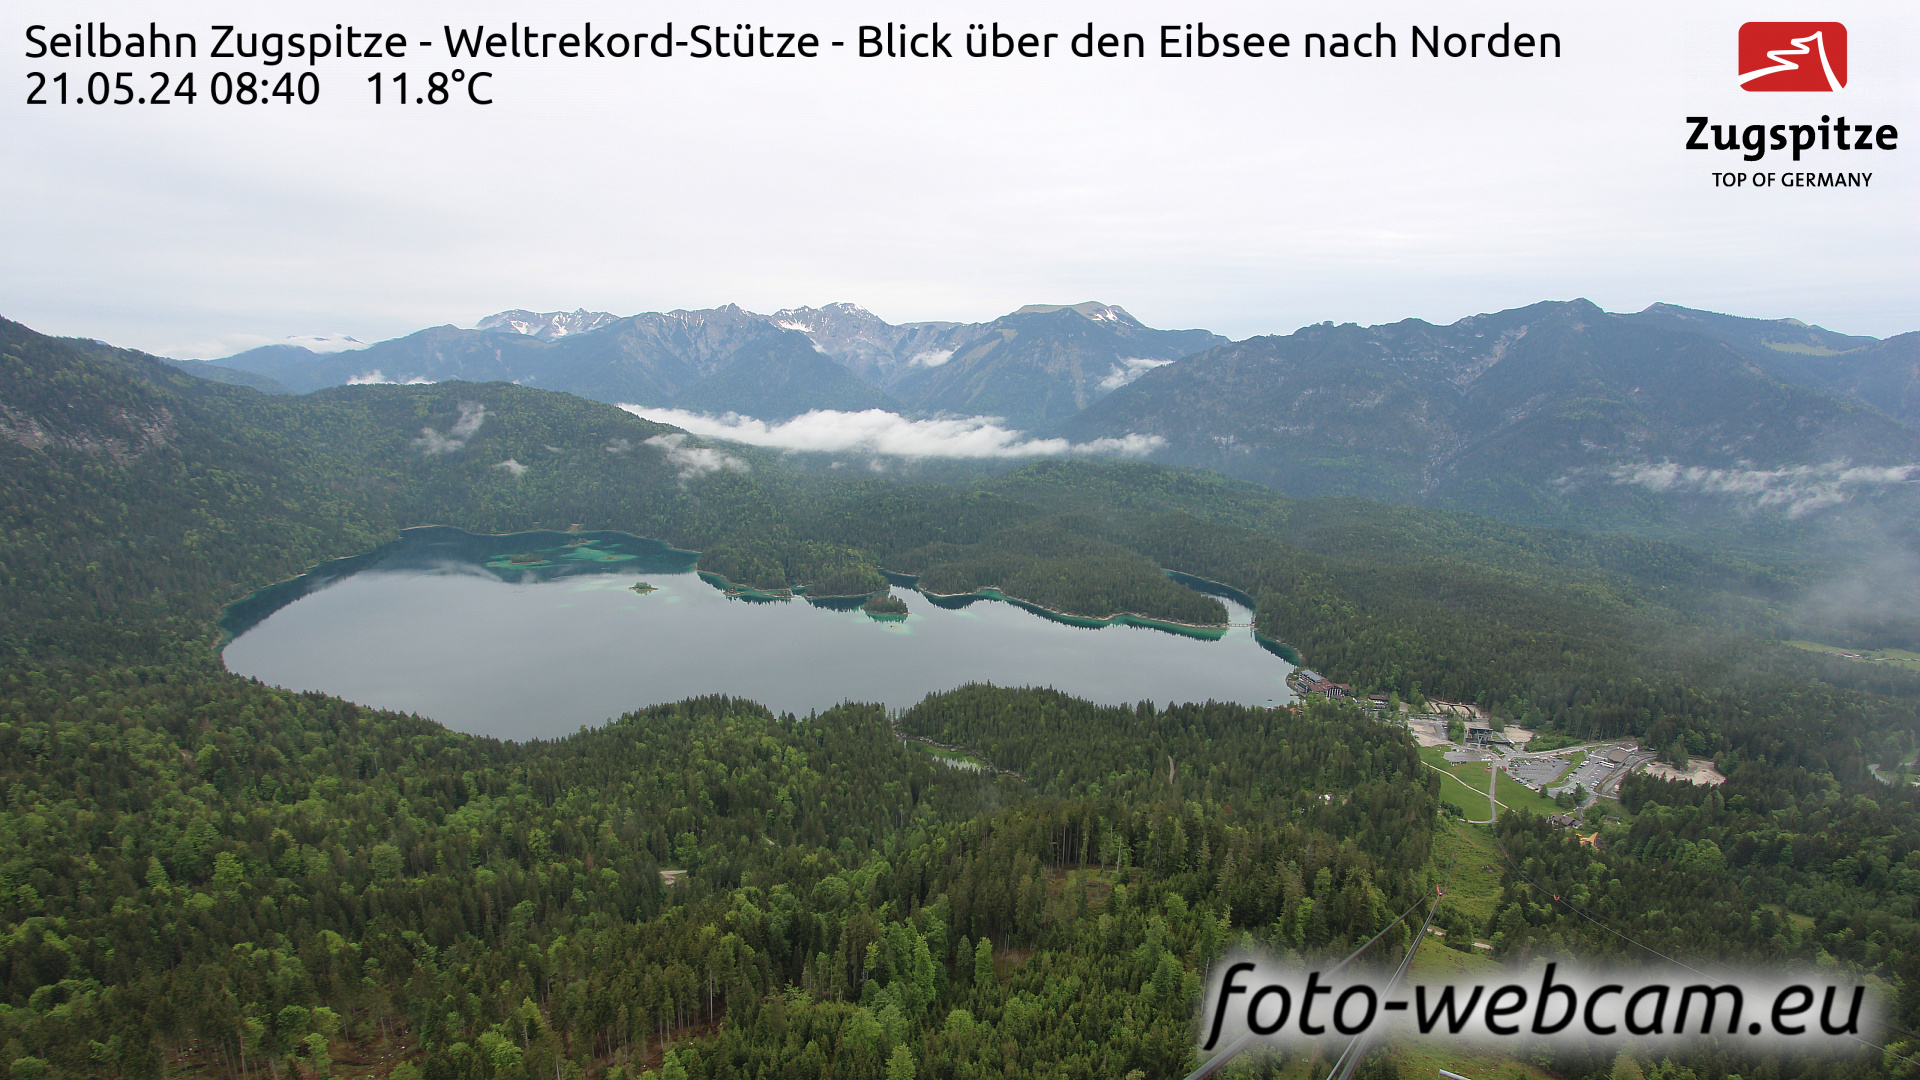 Zugspitze Wed. 08:49